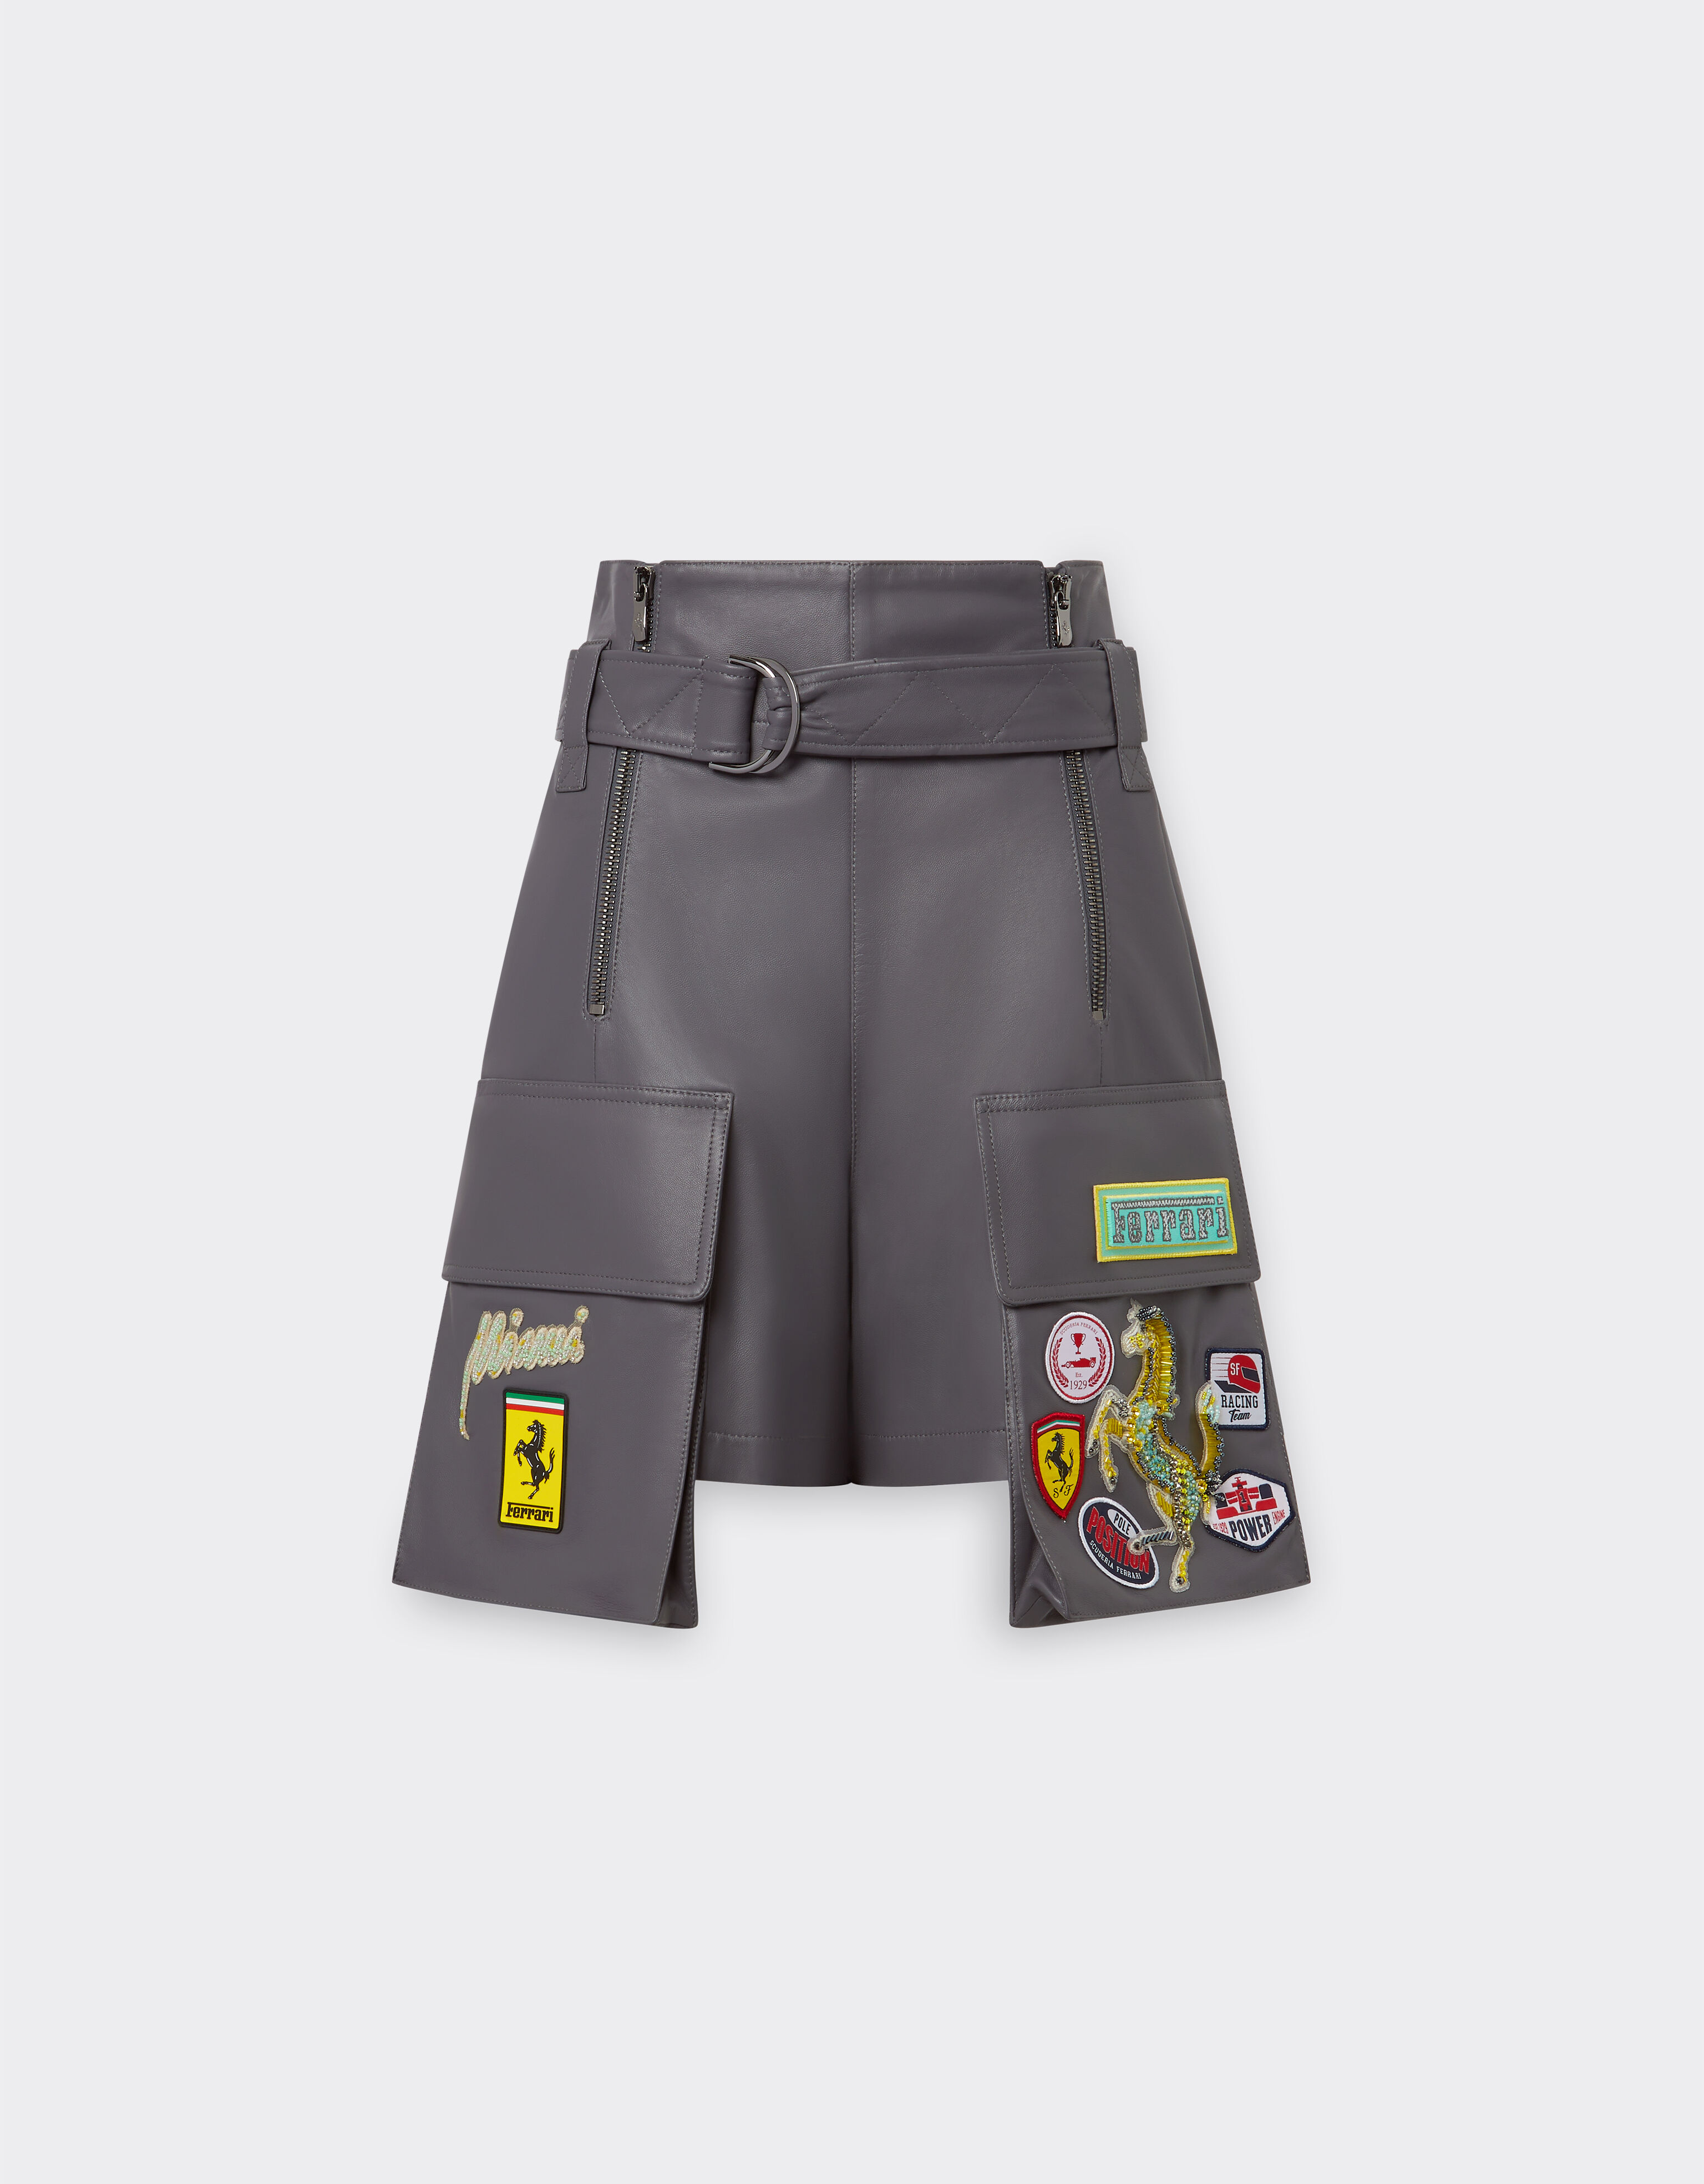 Ferrari Miami Collection shorts in nappa leather Aquamarine 21253f